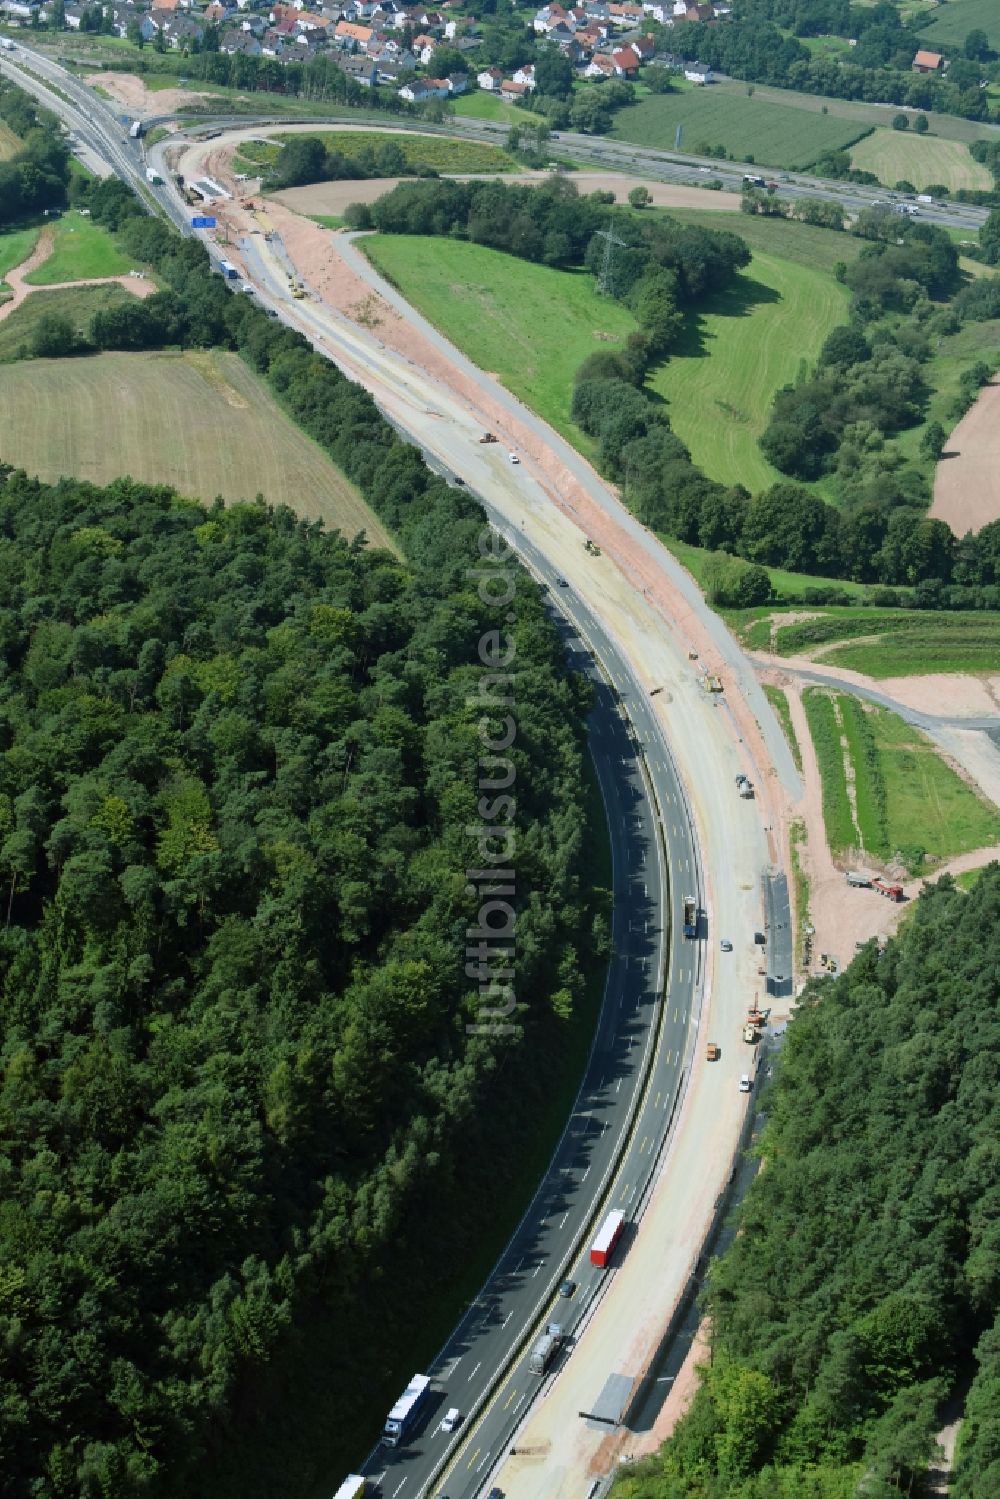 Kirchheim von oben - Baustelle an der Verkehrsführung am Autobahndreieck der BAB A7 in Kirchheim im Bundesland Hessen, Deutschland